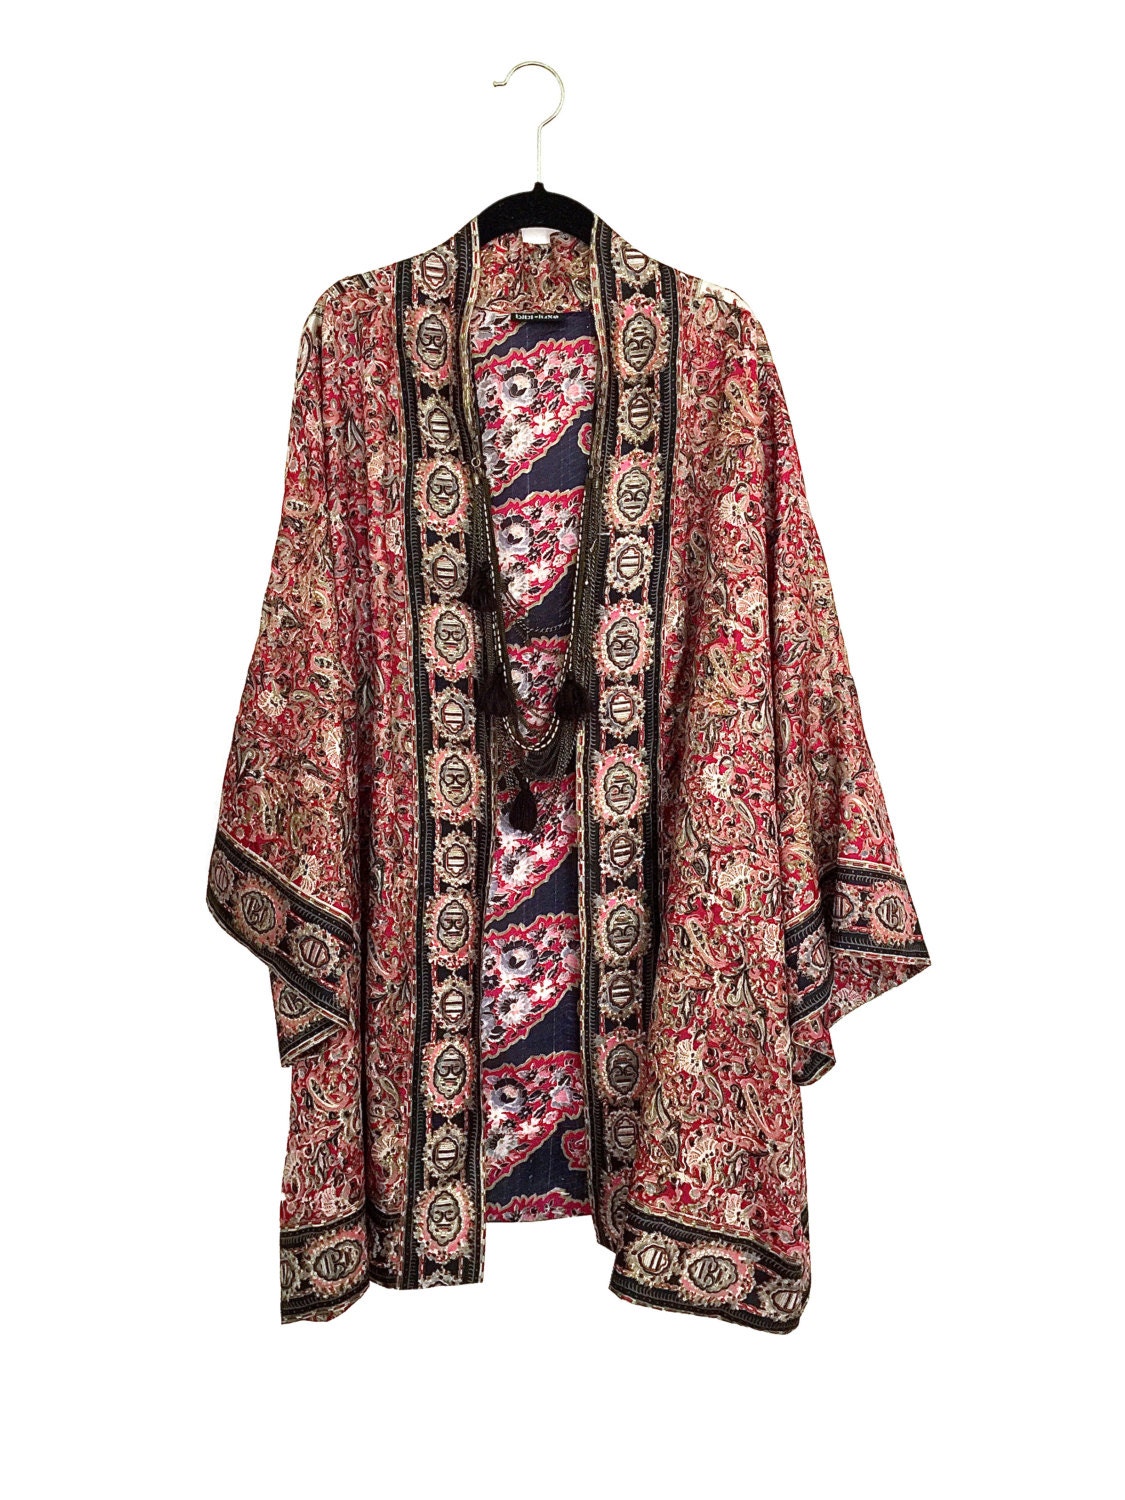 Kimono jacket (With images) | Silk kimono jacket, Kimono fashion, Pure ...